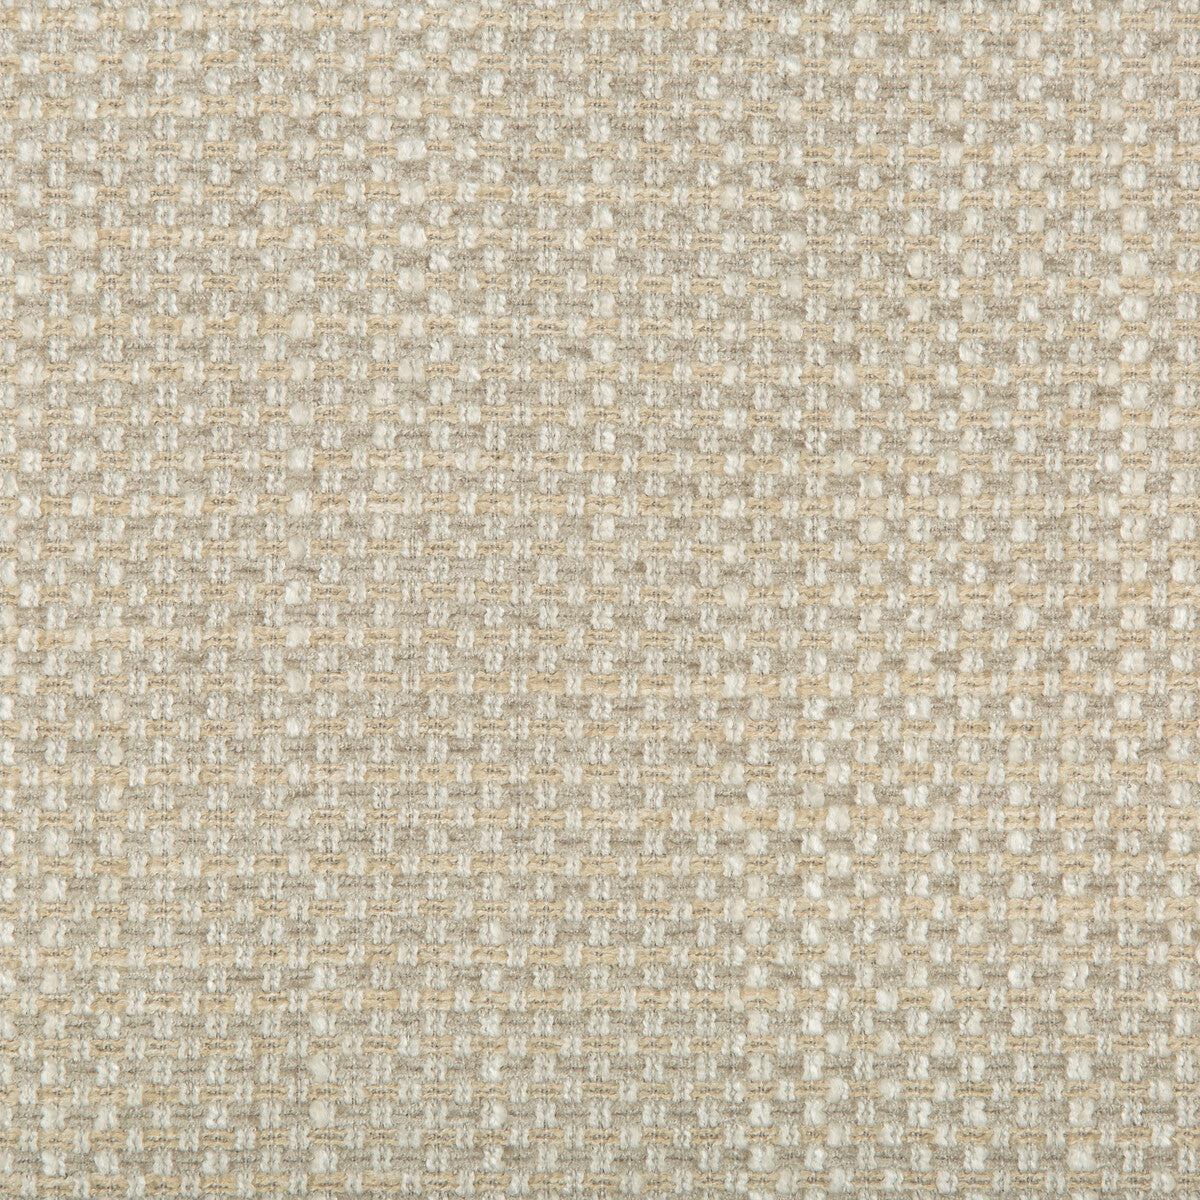 Kravet Design fabric in 35701-16 color - pattern 35701.16.0 - by Kravet Design